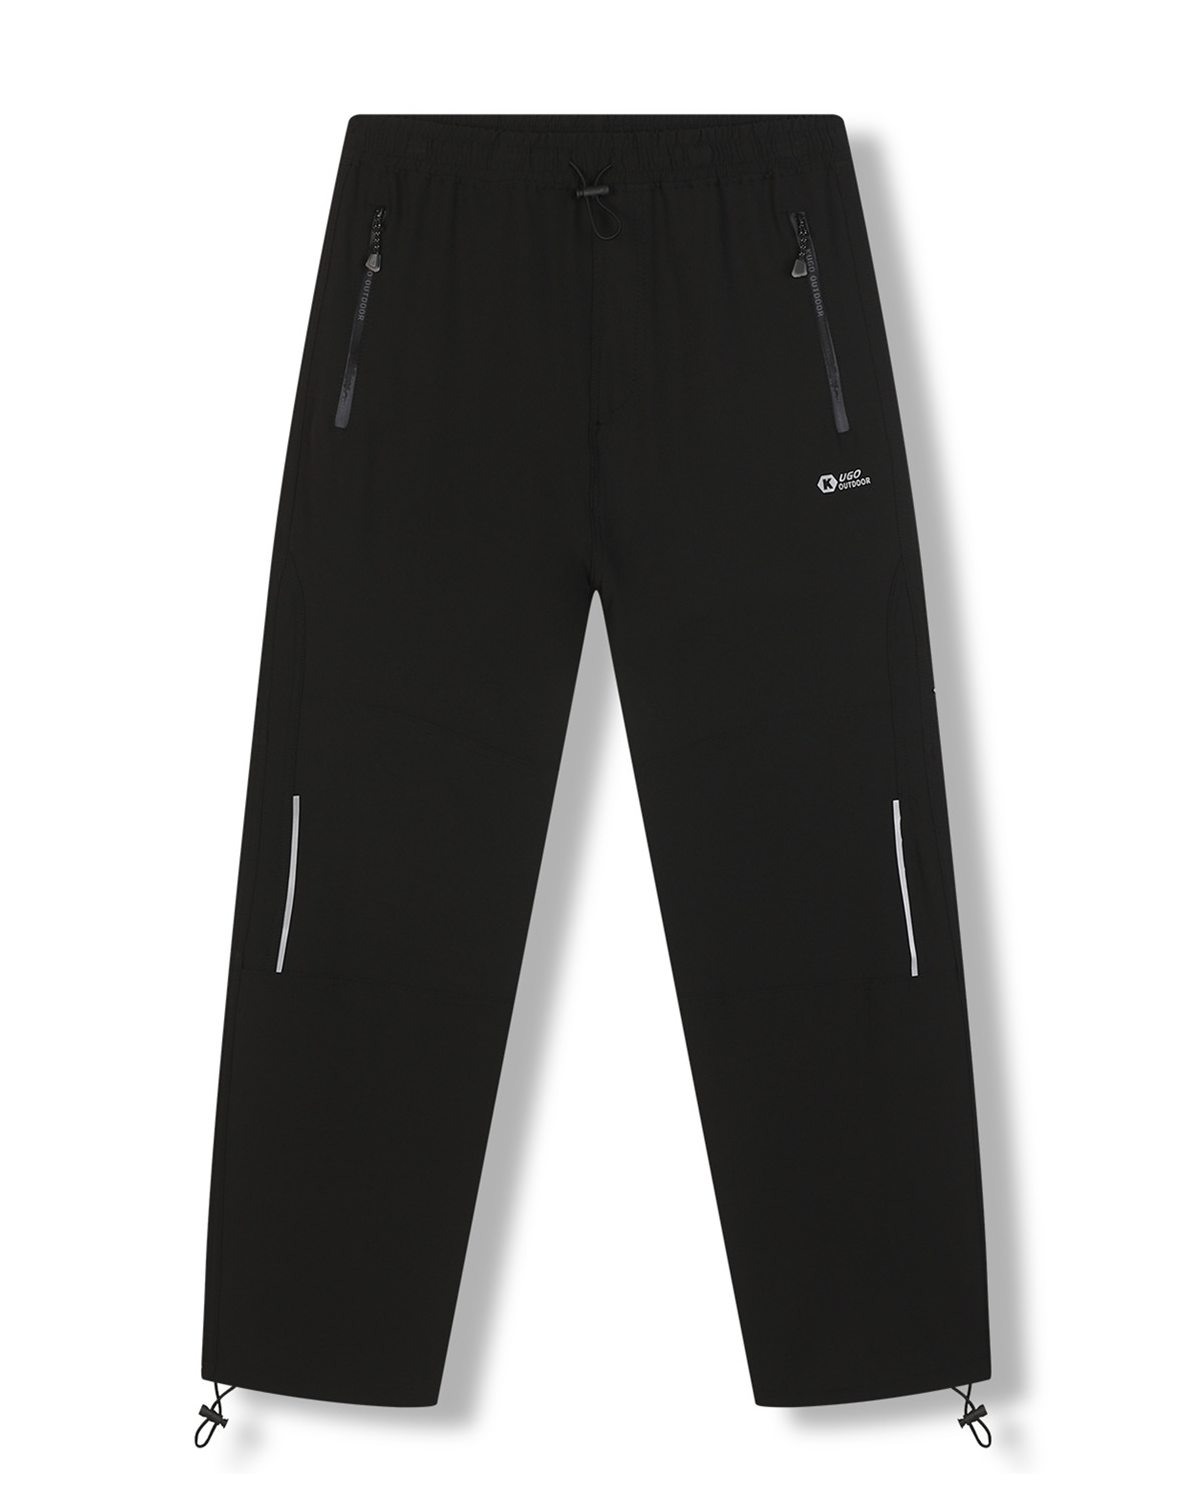 Pánské softshellové kalhoty - KUGO HK7587, celočerná Barva: Černá, Velikost: L